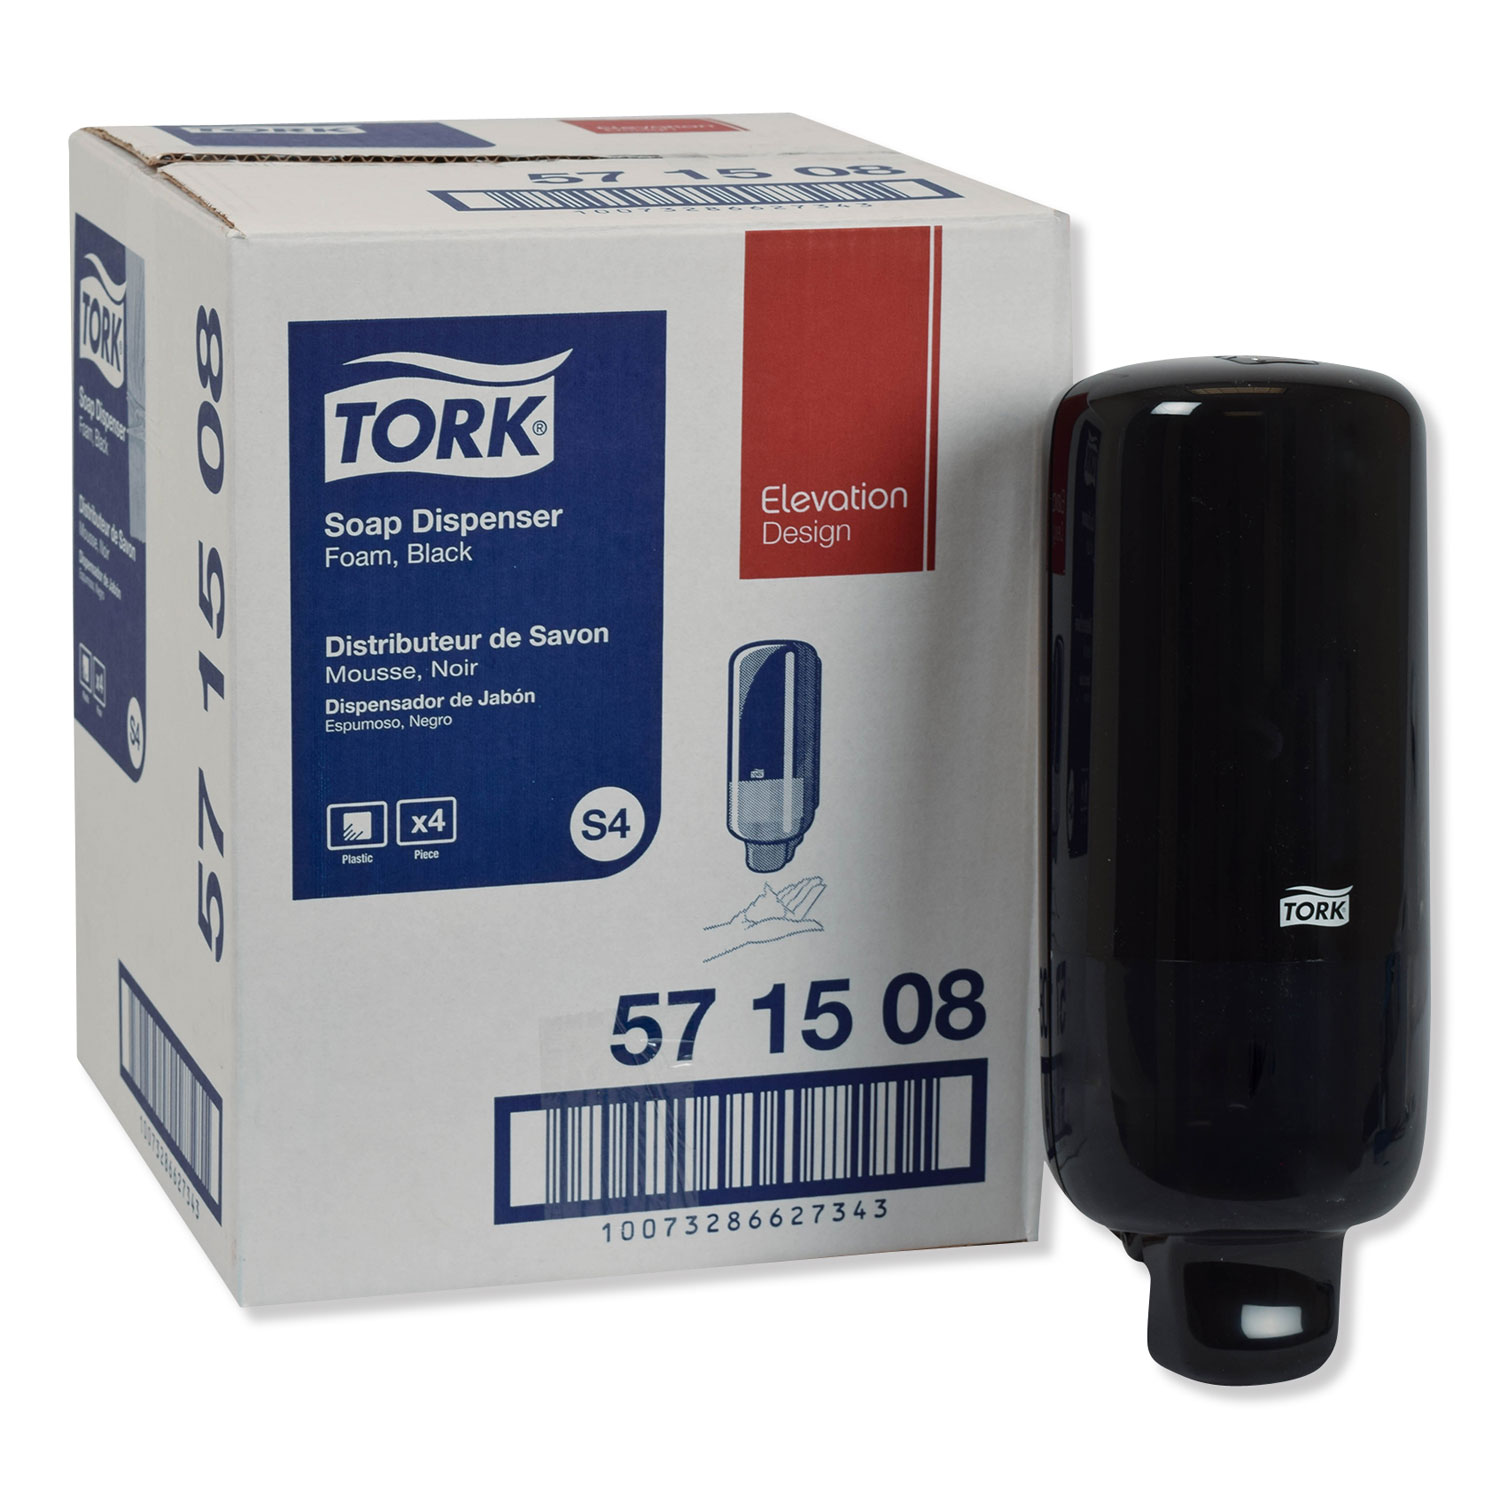  Tork 571508 Foam Skincare Manual Dispenser, 1 L Bottle; 33 oz Bottle, 4.45 x 4.13 x 11.26, Black (TRK571508) 